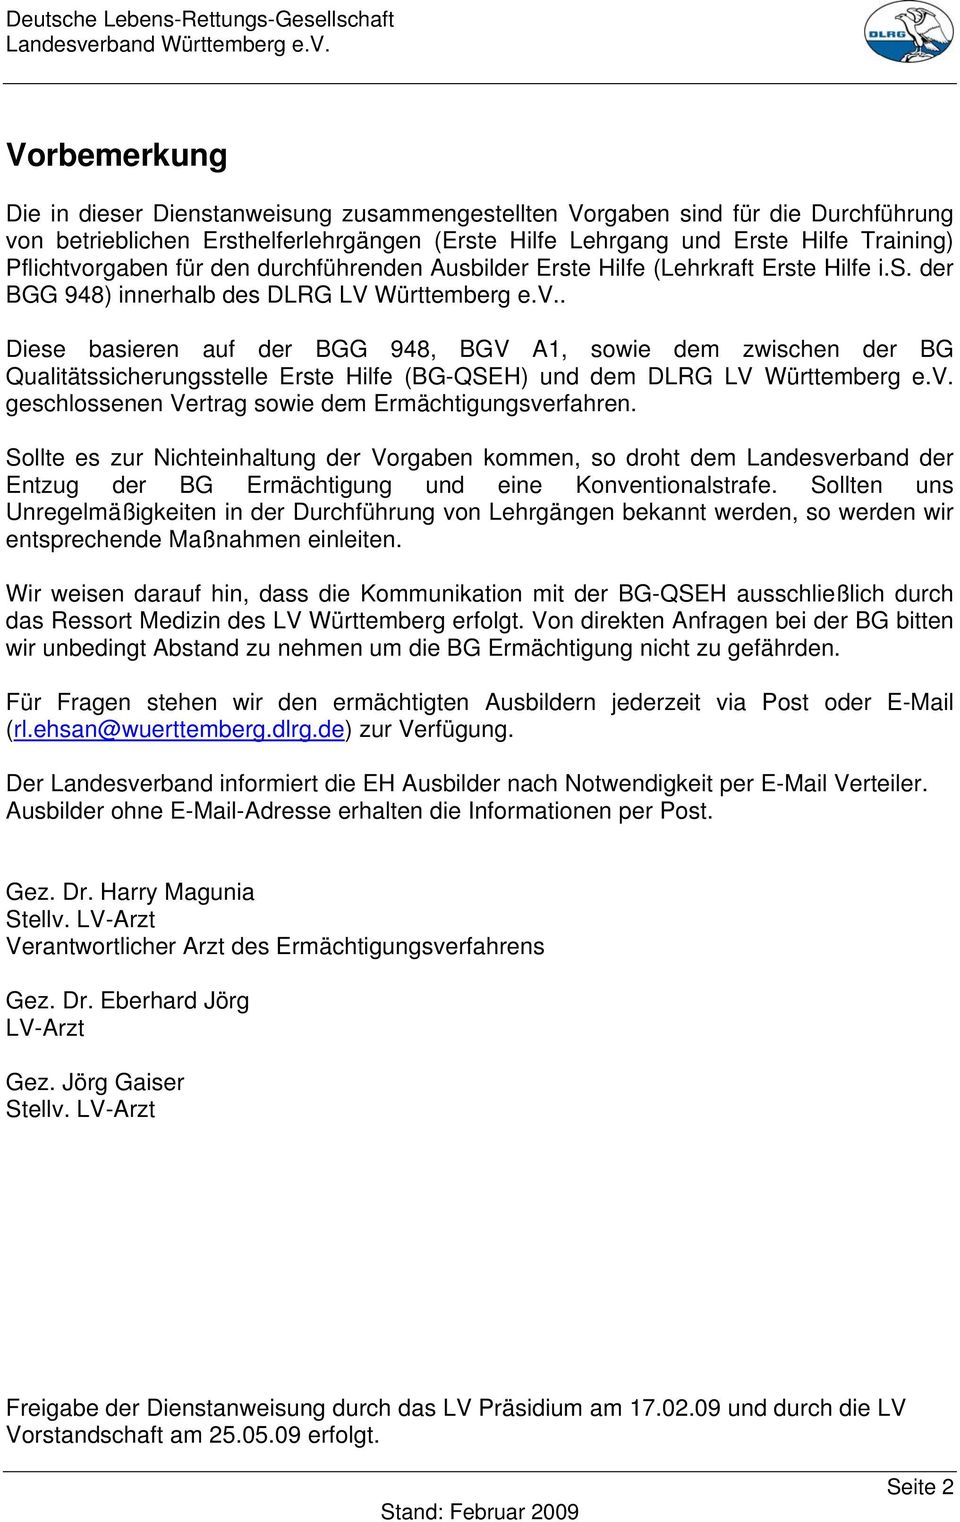 . Diese basieren auf der BGG 948, BGV A1, sowie dem zwischen der BG Qualitätssicherungsstelle Erste Hilfe (BG-QSEH) und dem DLRG LV Württemberg e.v.